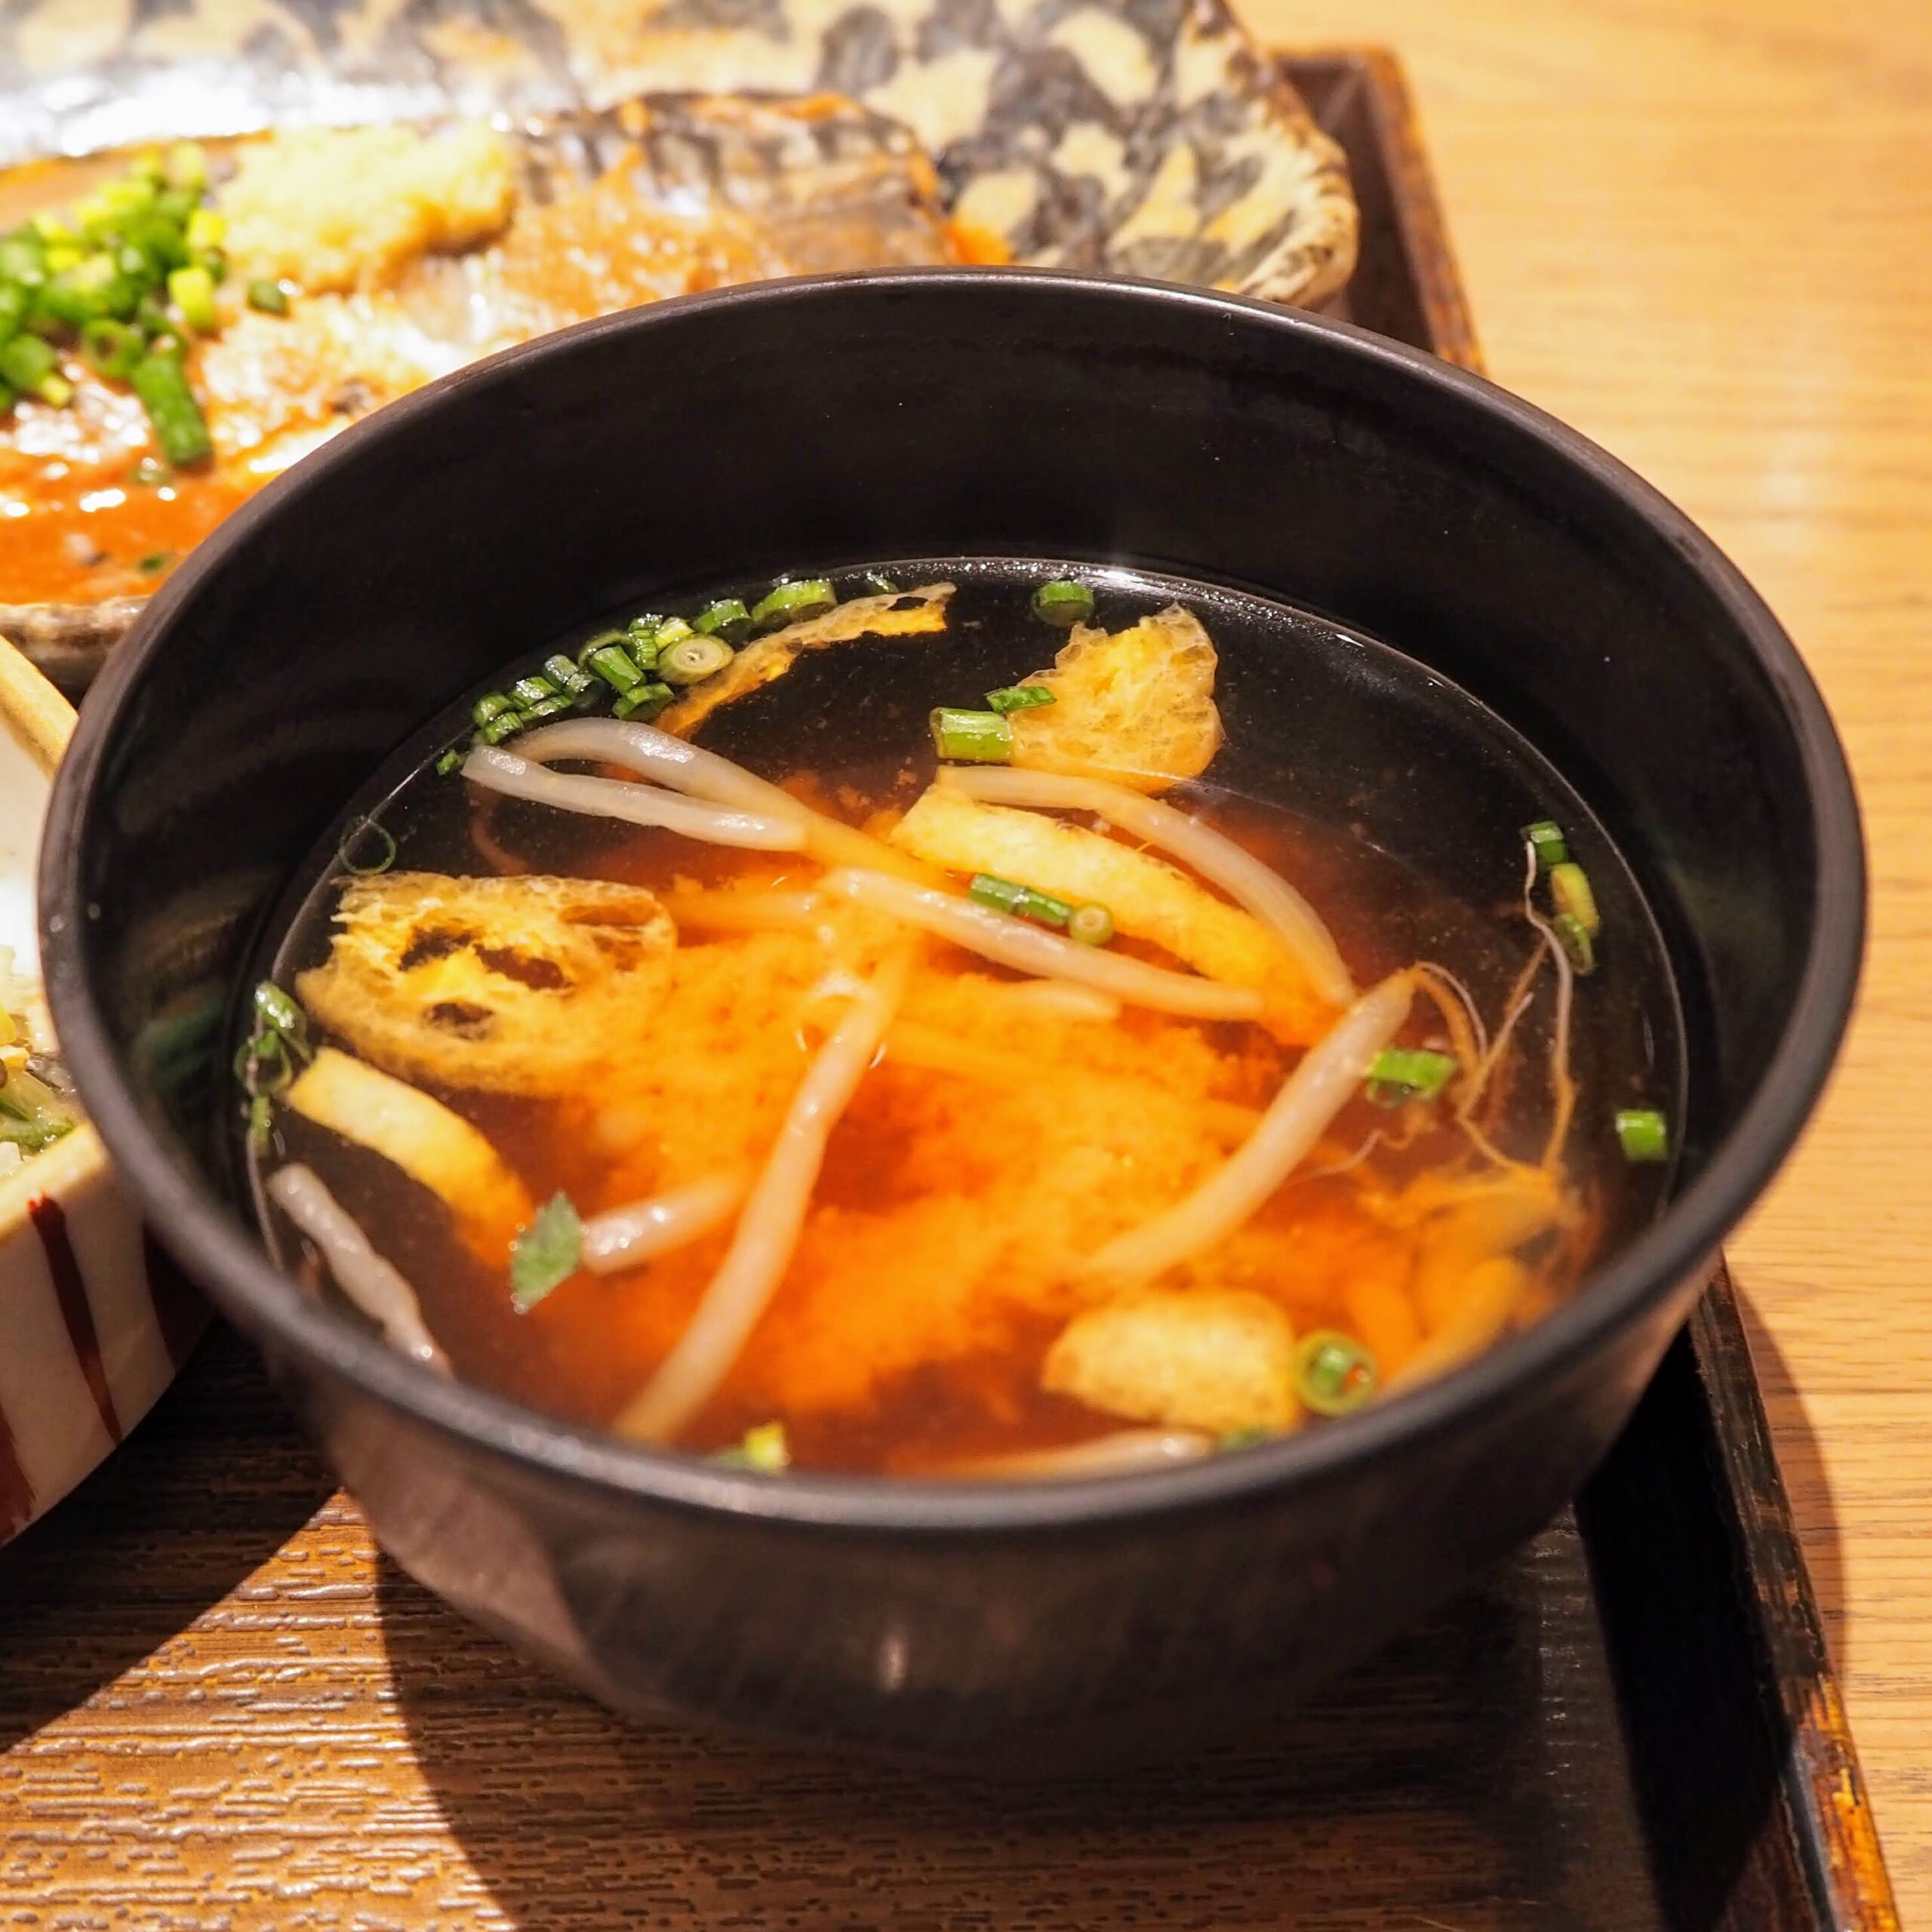 土鍋炊ごはん なかよし 渋谷ストリーム店 さばの味噌煮定食 もやしと油揚げのお味噌汁